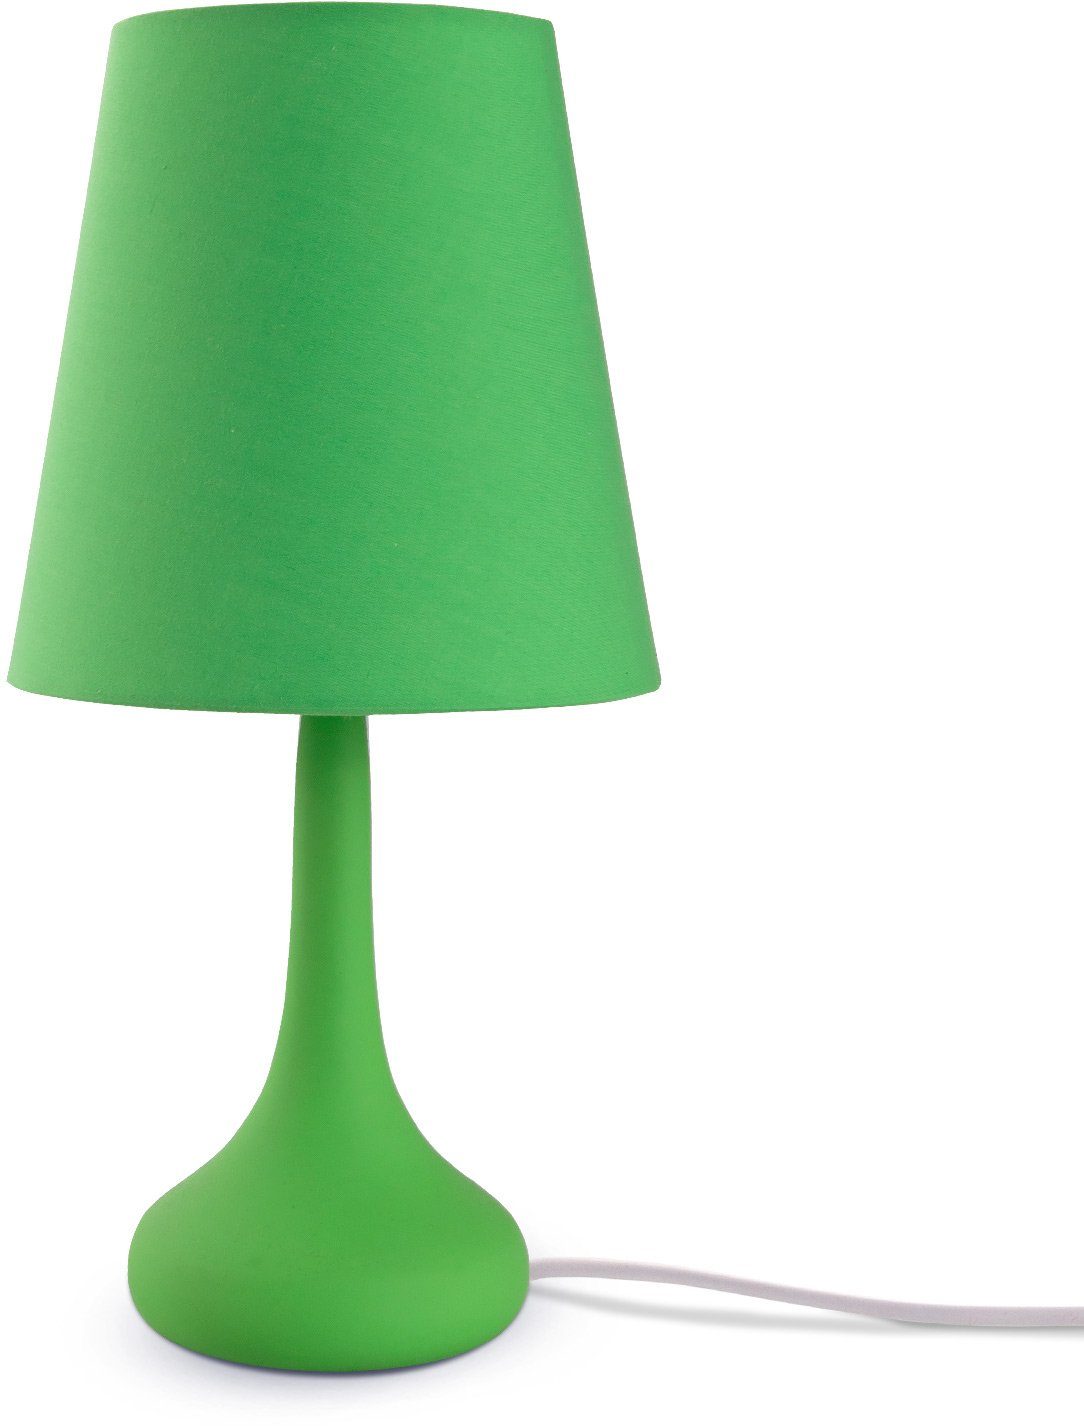 Paco HELA, Lampe, E14 Tischleuchte LED Für Wohnzimmer u. grün Modern Home ohne Tischleuchte Leuchtmittel, Kinderzimmer